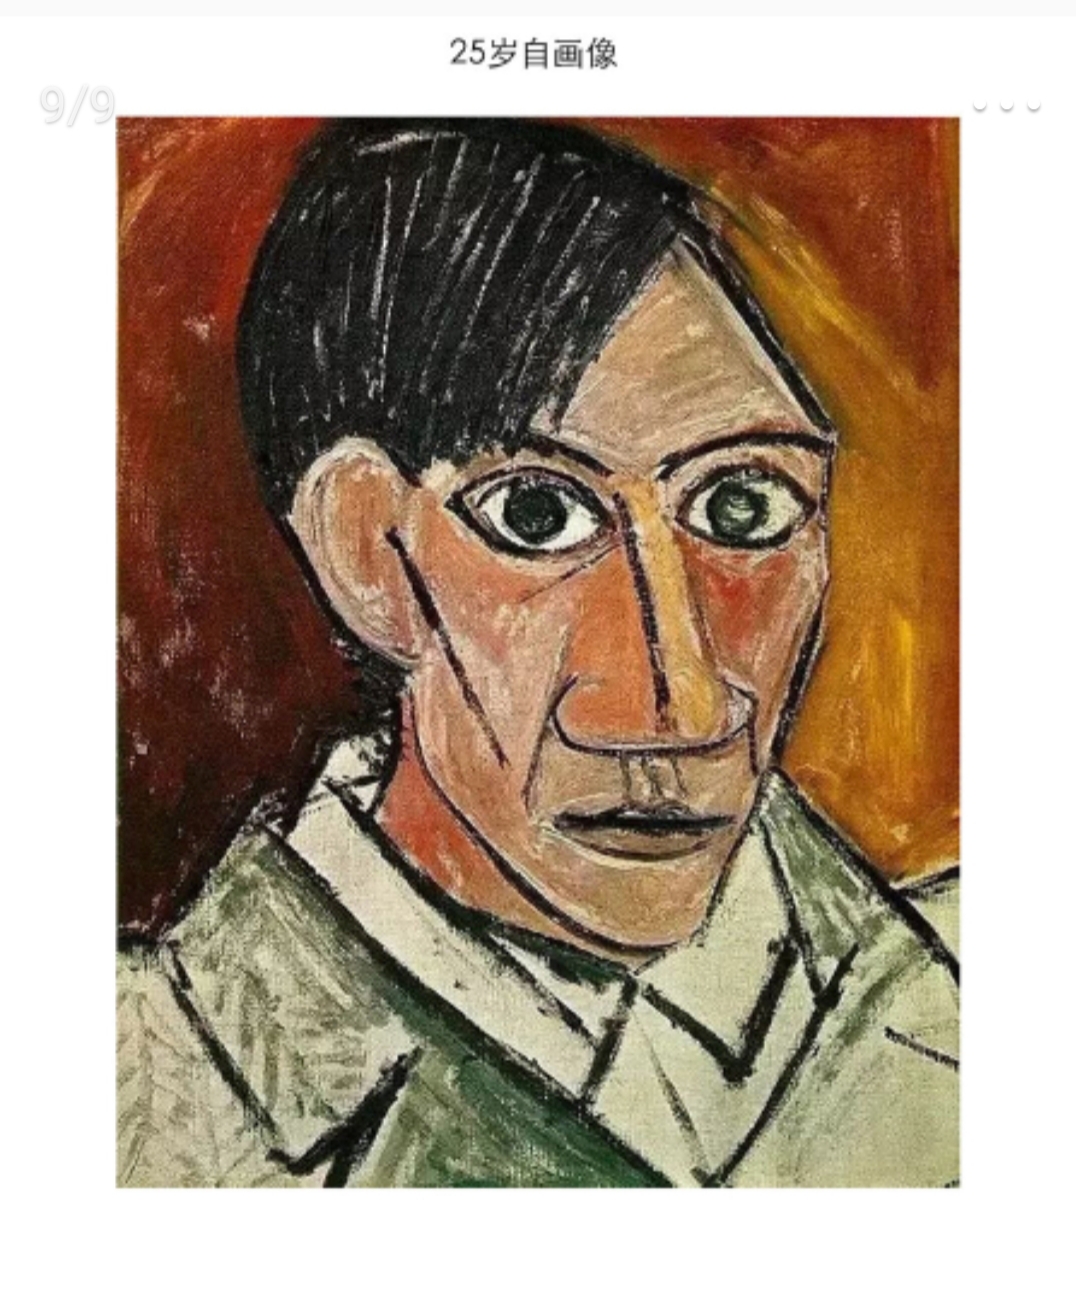 大家好,我又来安利毕加索了,这次是他的从年轻到老年的自画像和立体